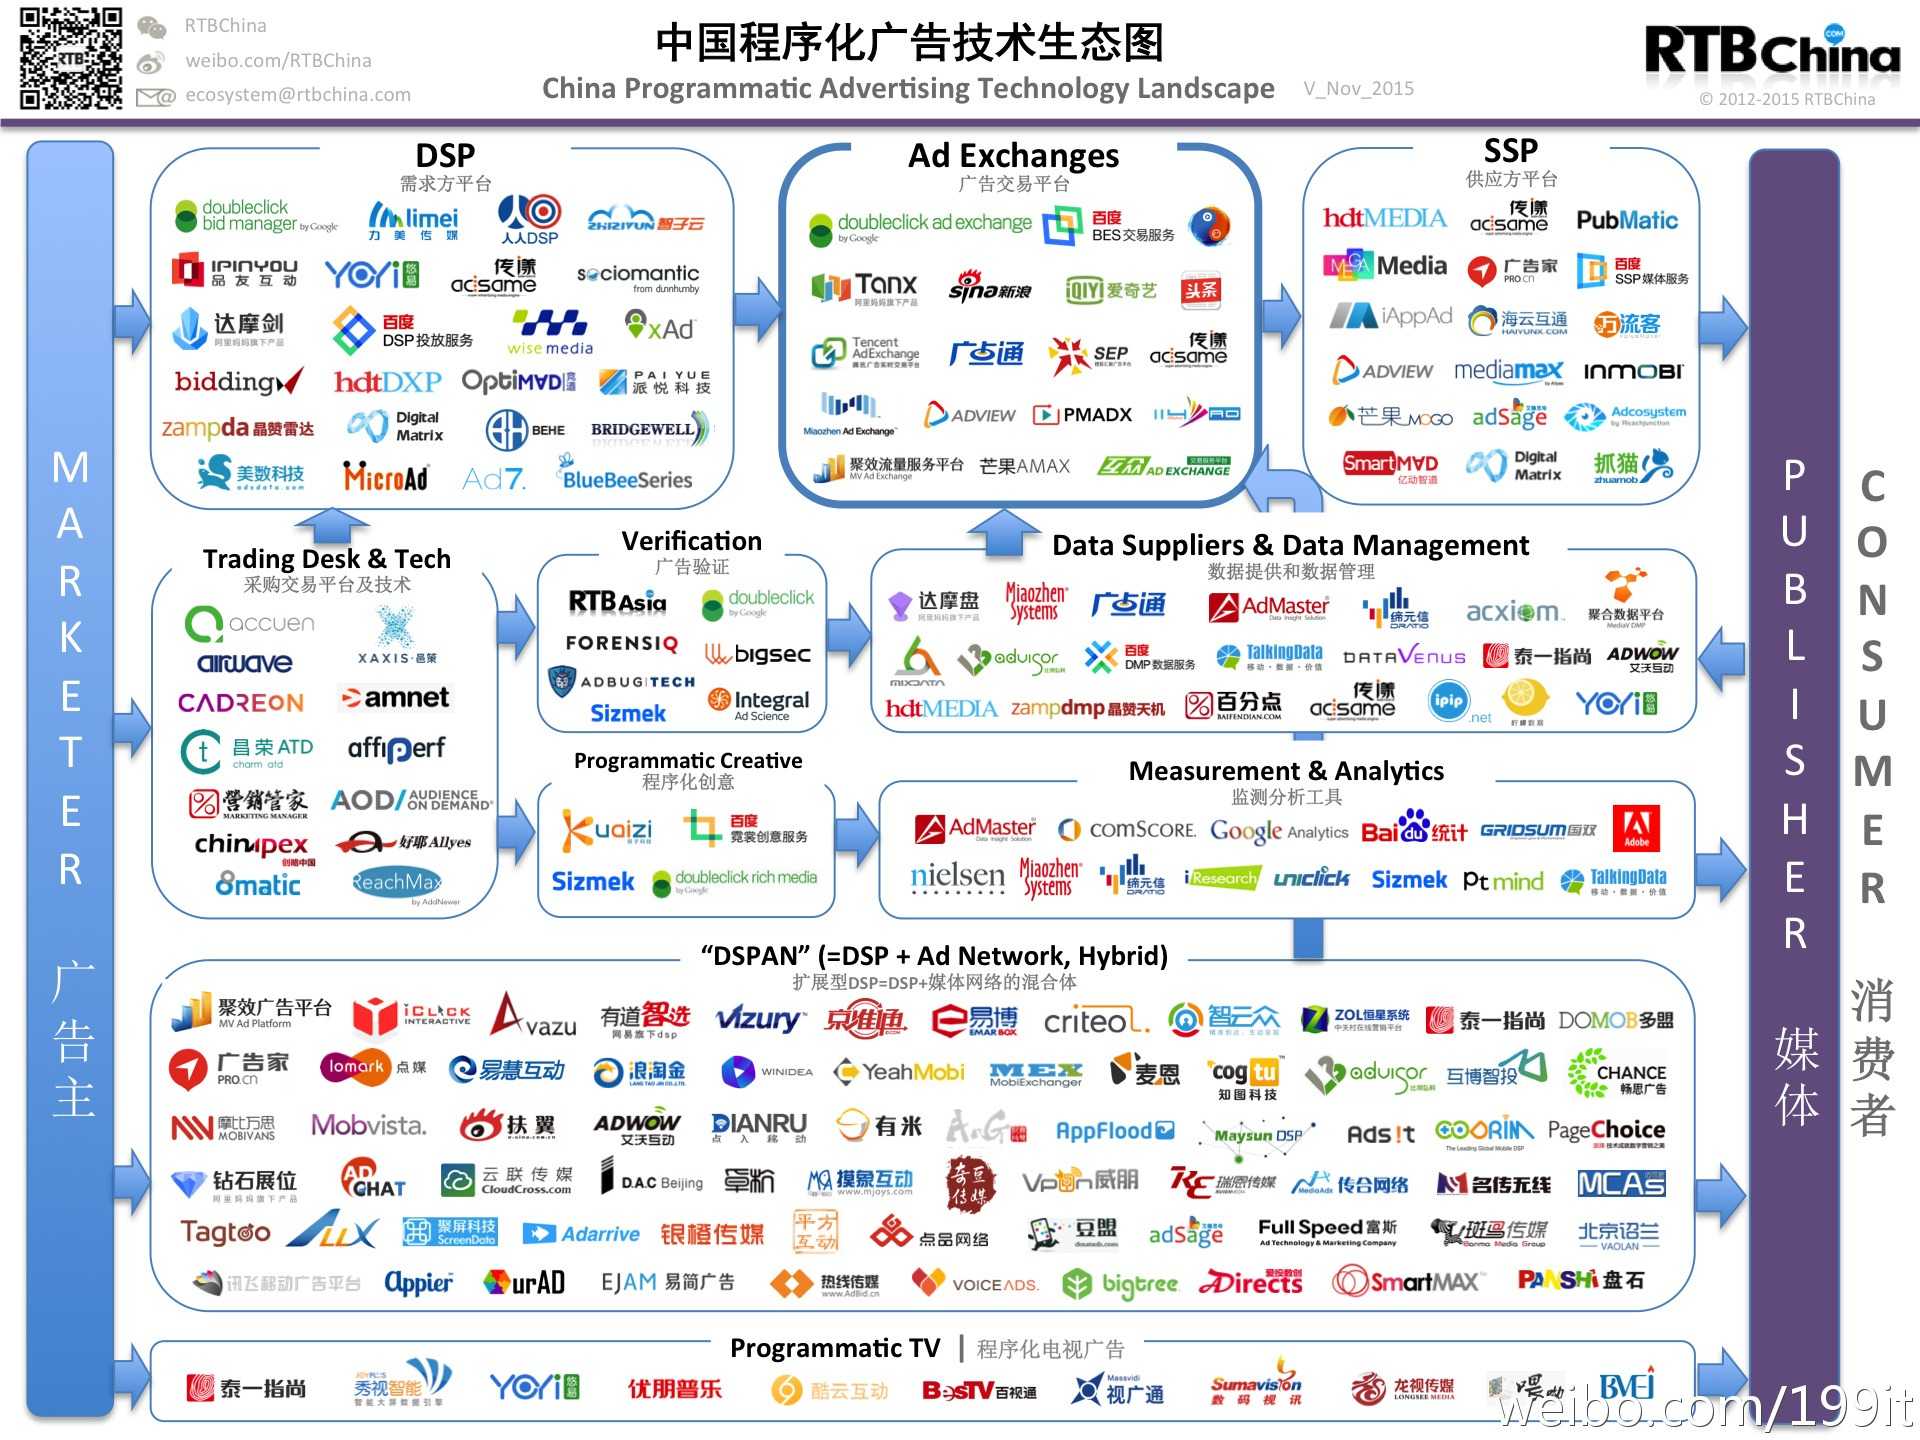 中国程序化广告技术生态图谱–信息图